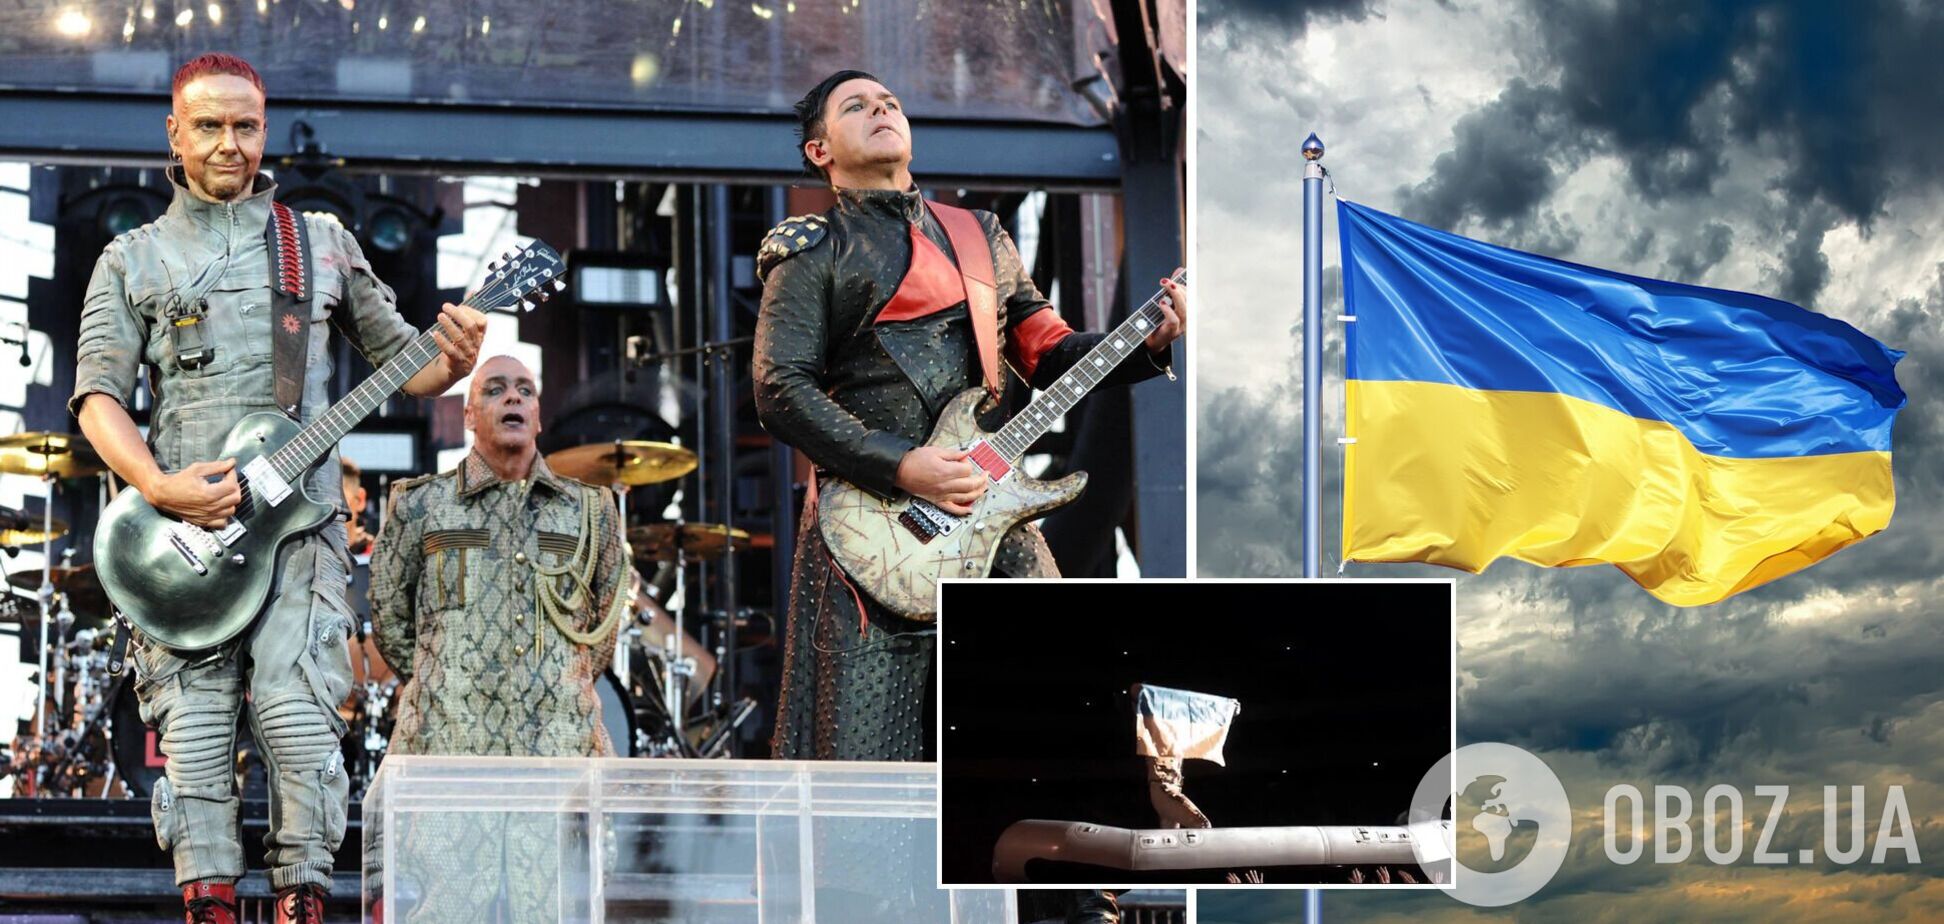 Культовые Rammstein на концерте в Польше подняли флаг Украины. Видео